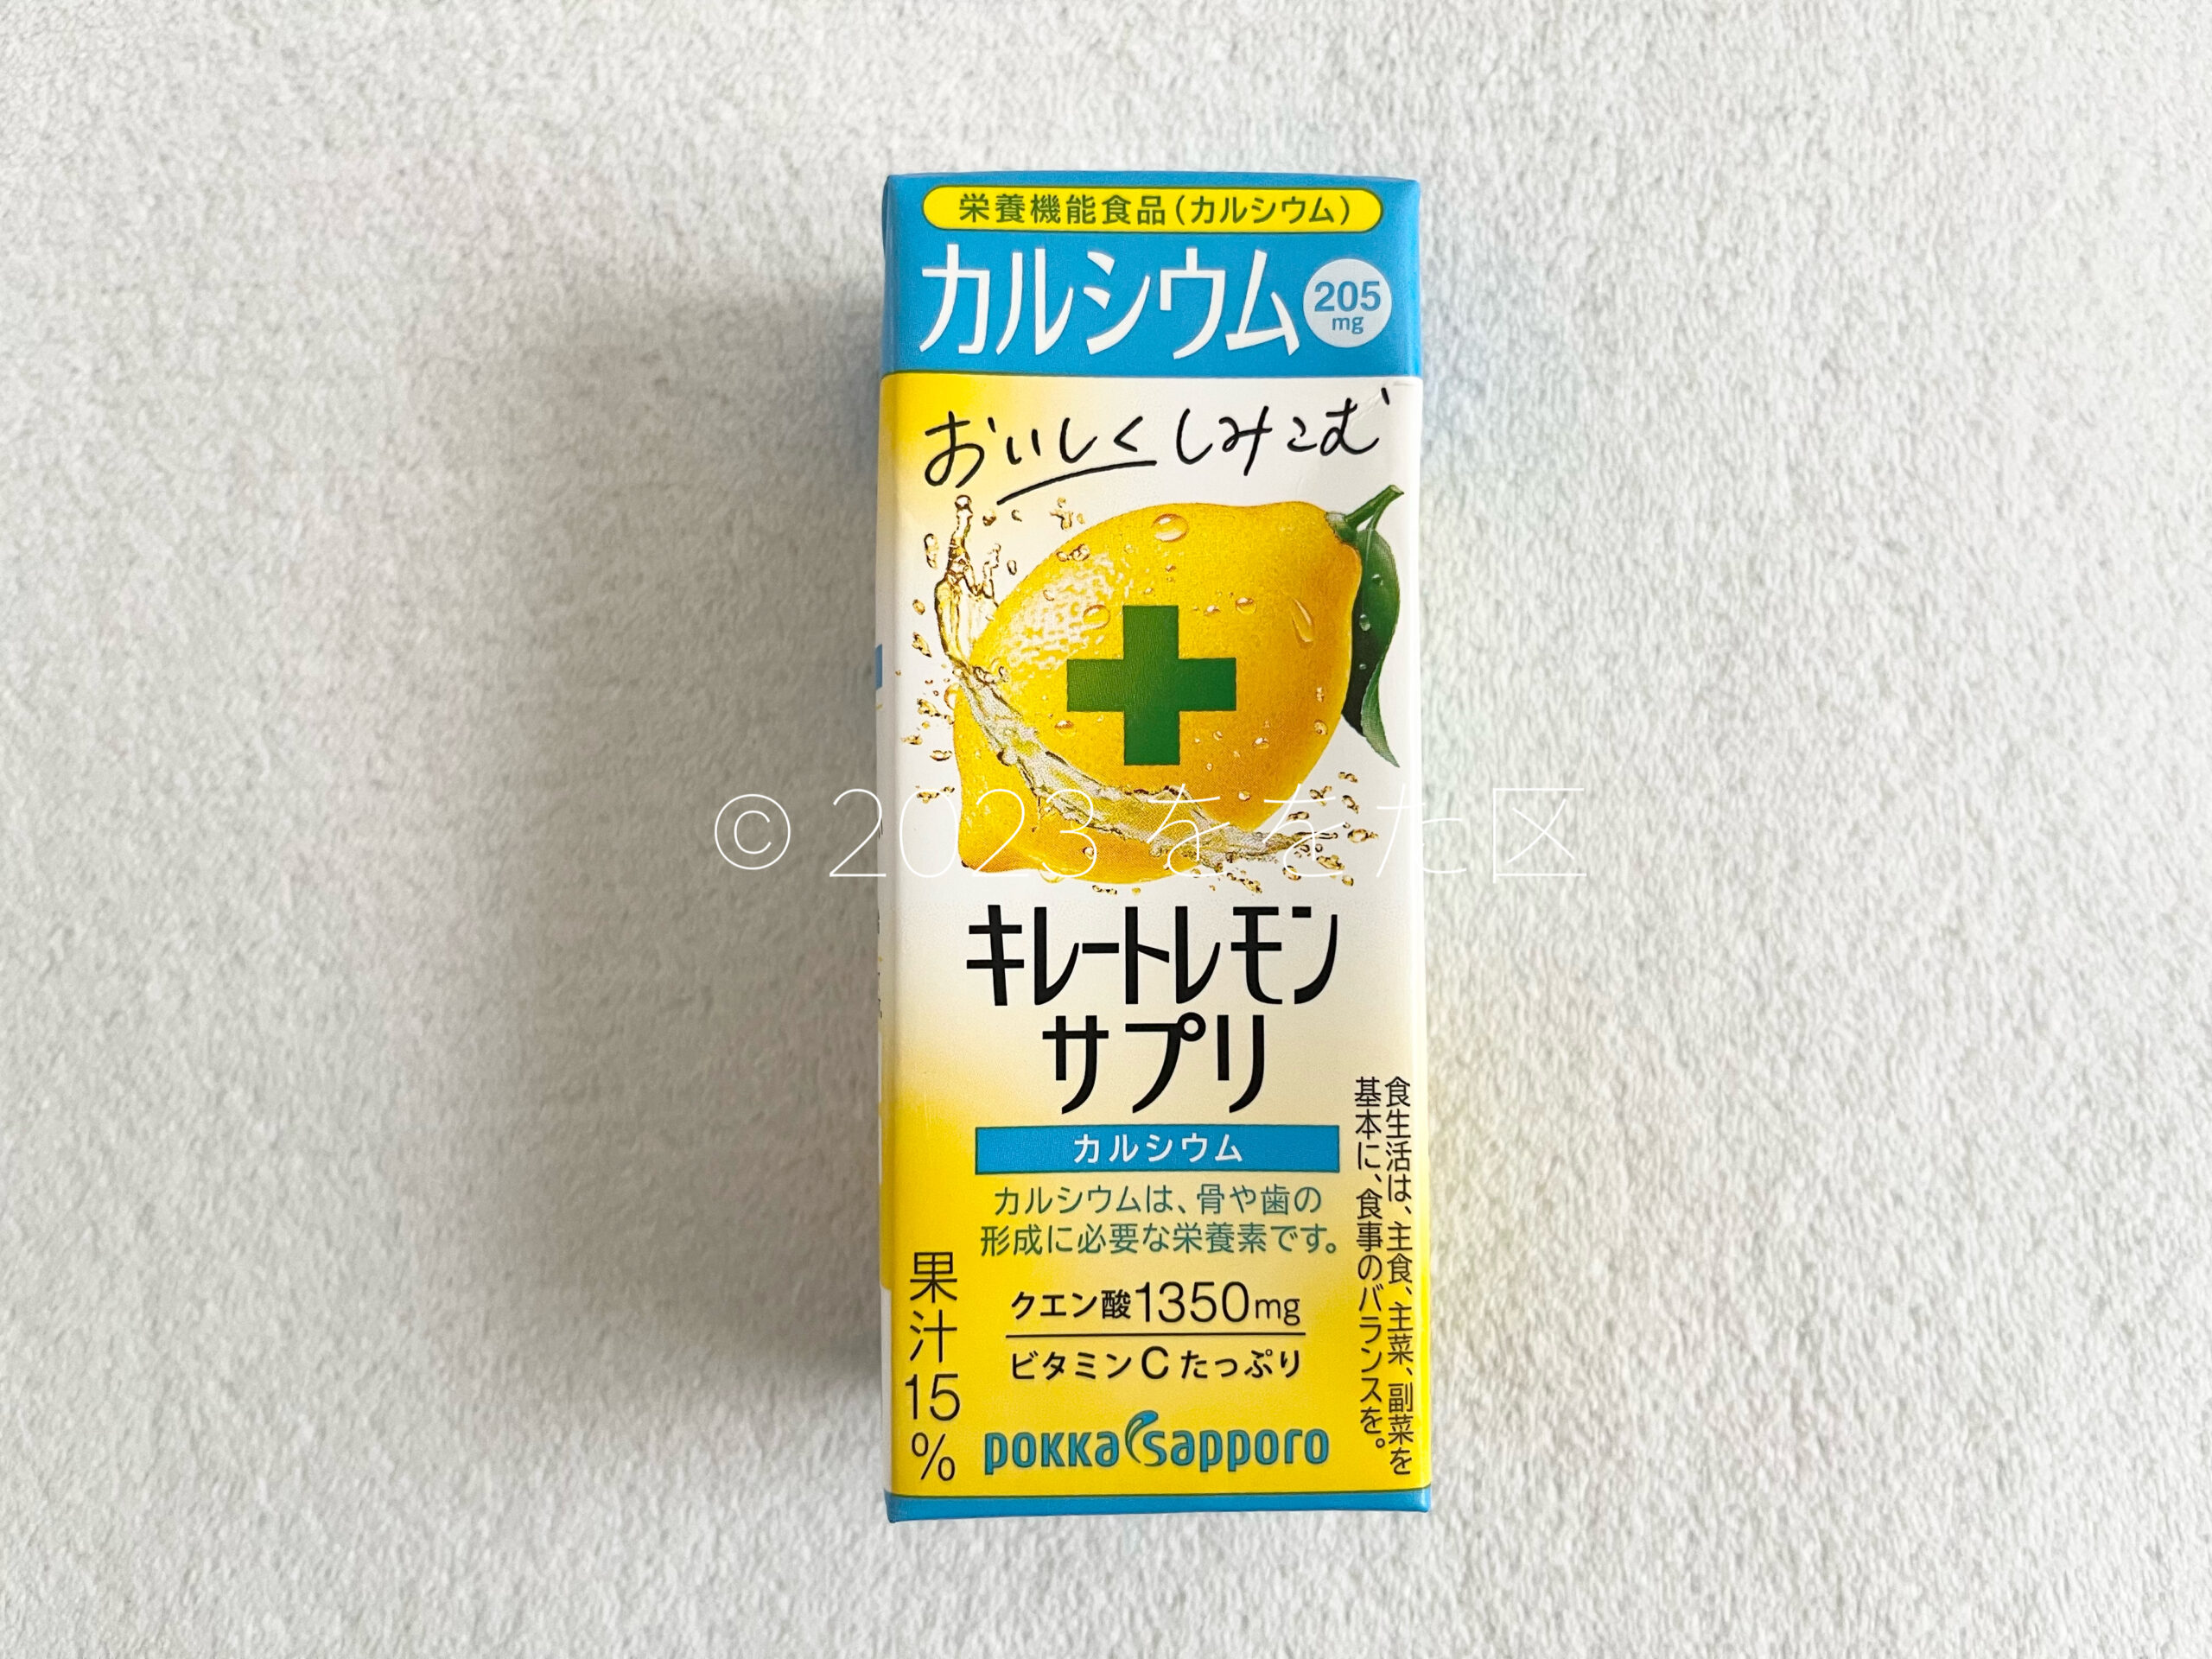 キレートレモン サプリカルシウムのパッケージデザイン